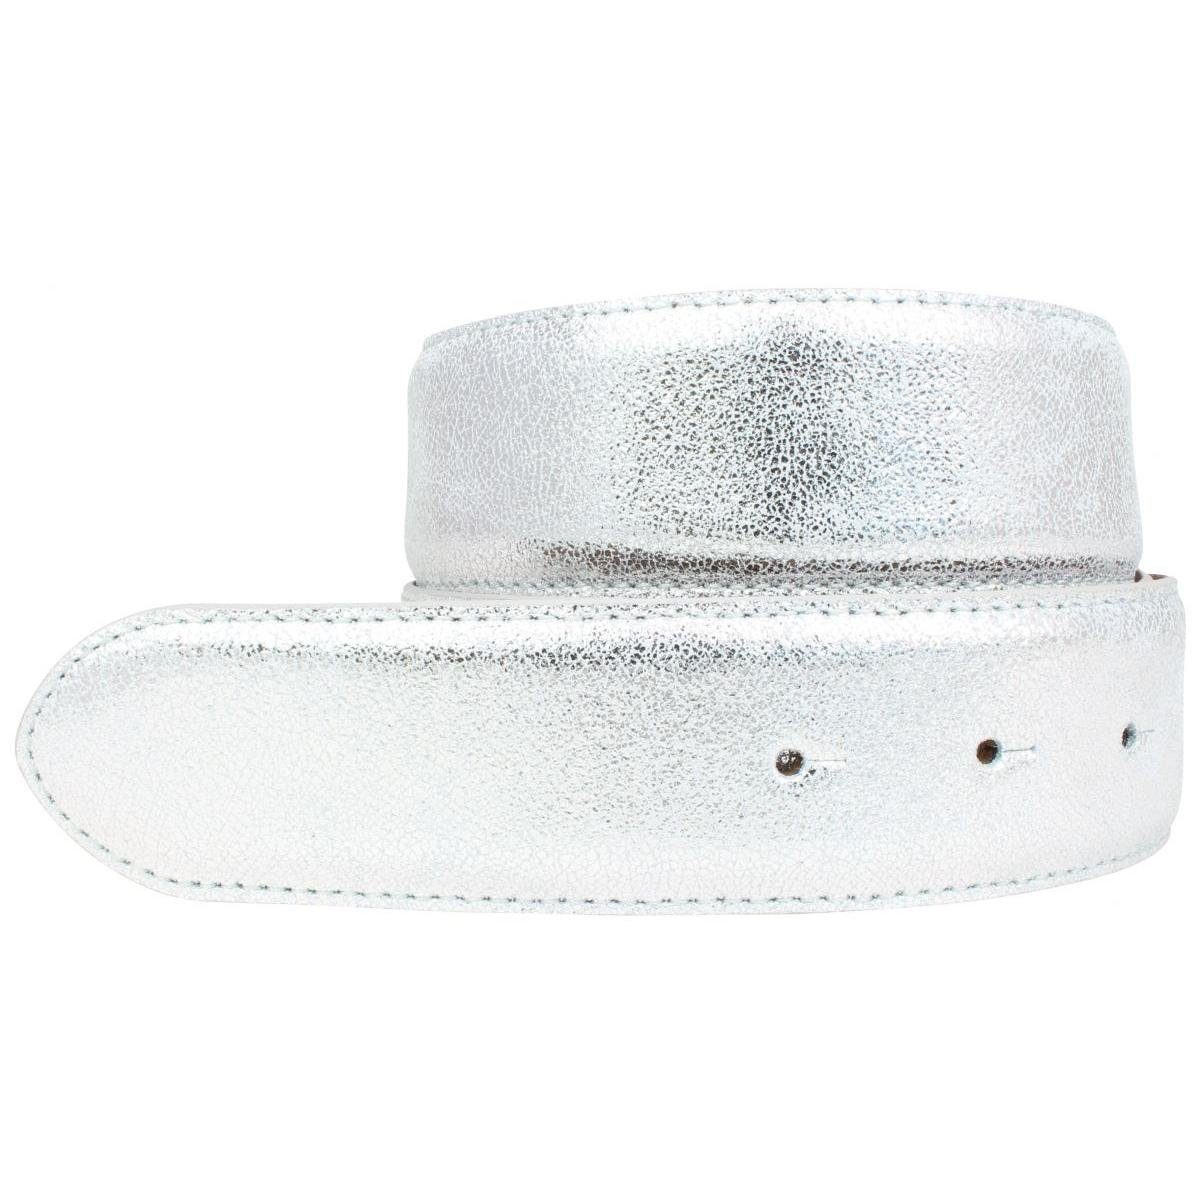 Gürtel BELTINGER 4 cm Ledergürtel Schnalle ohne Echt Meta Hochwertiger Metall-Optik - Silber Leder